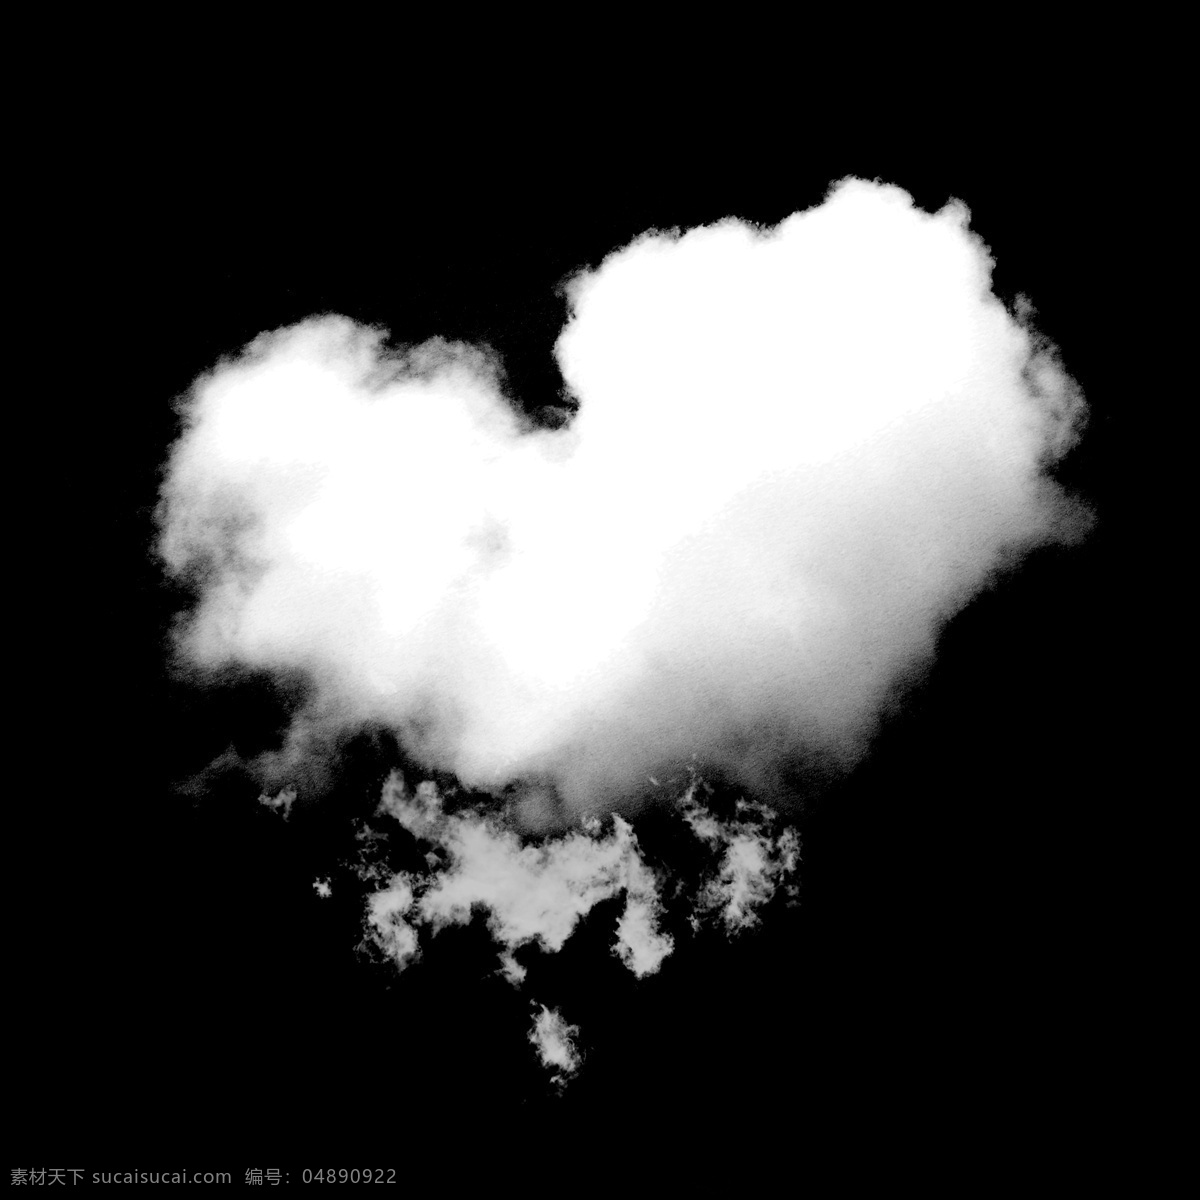 手绘 创意 爱心 白云 免 抠 图 卡通手绘 云朵 小清新 漂浮 水彩 白色 爱心云朵